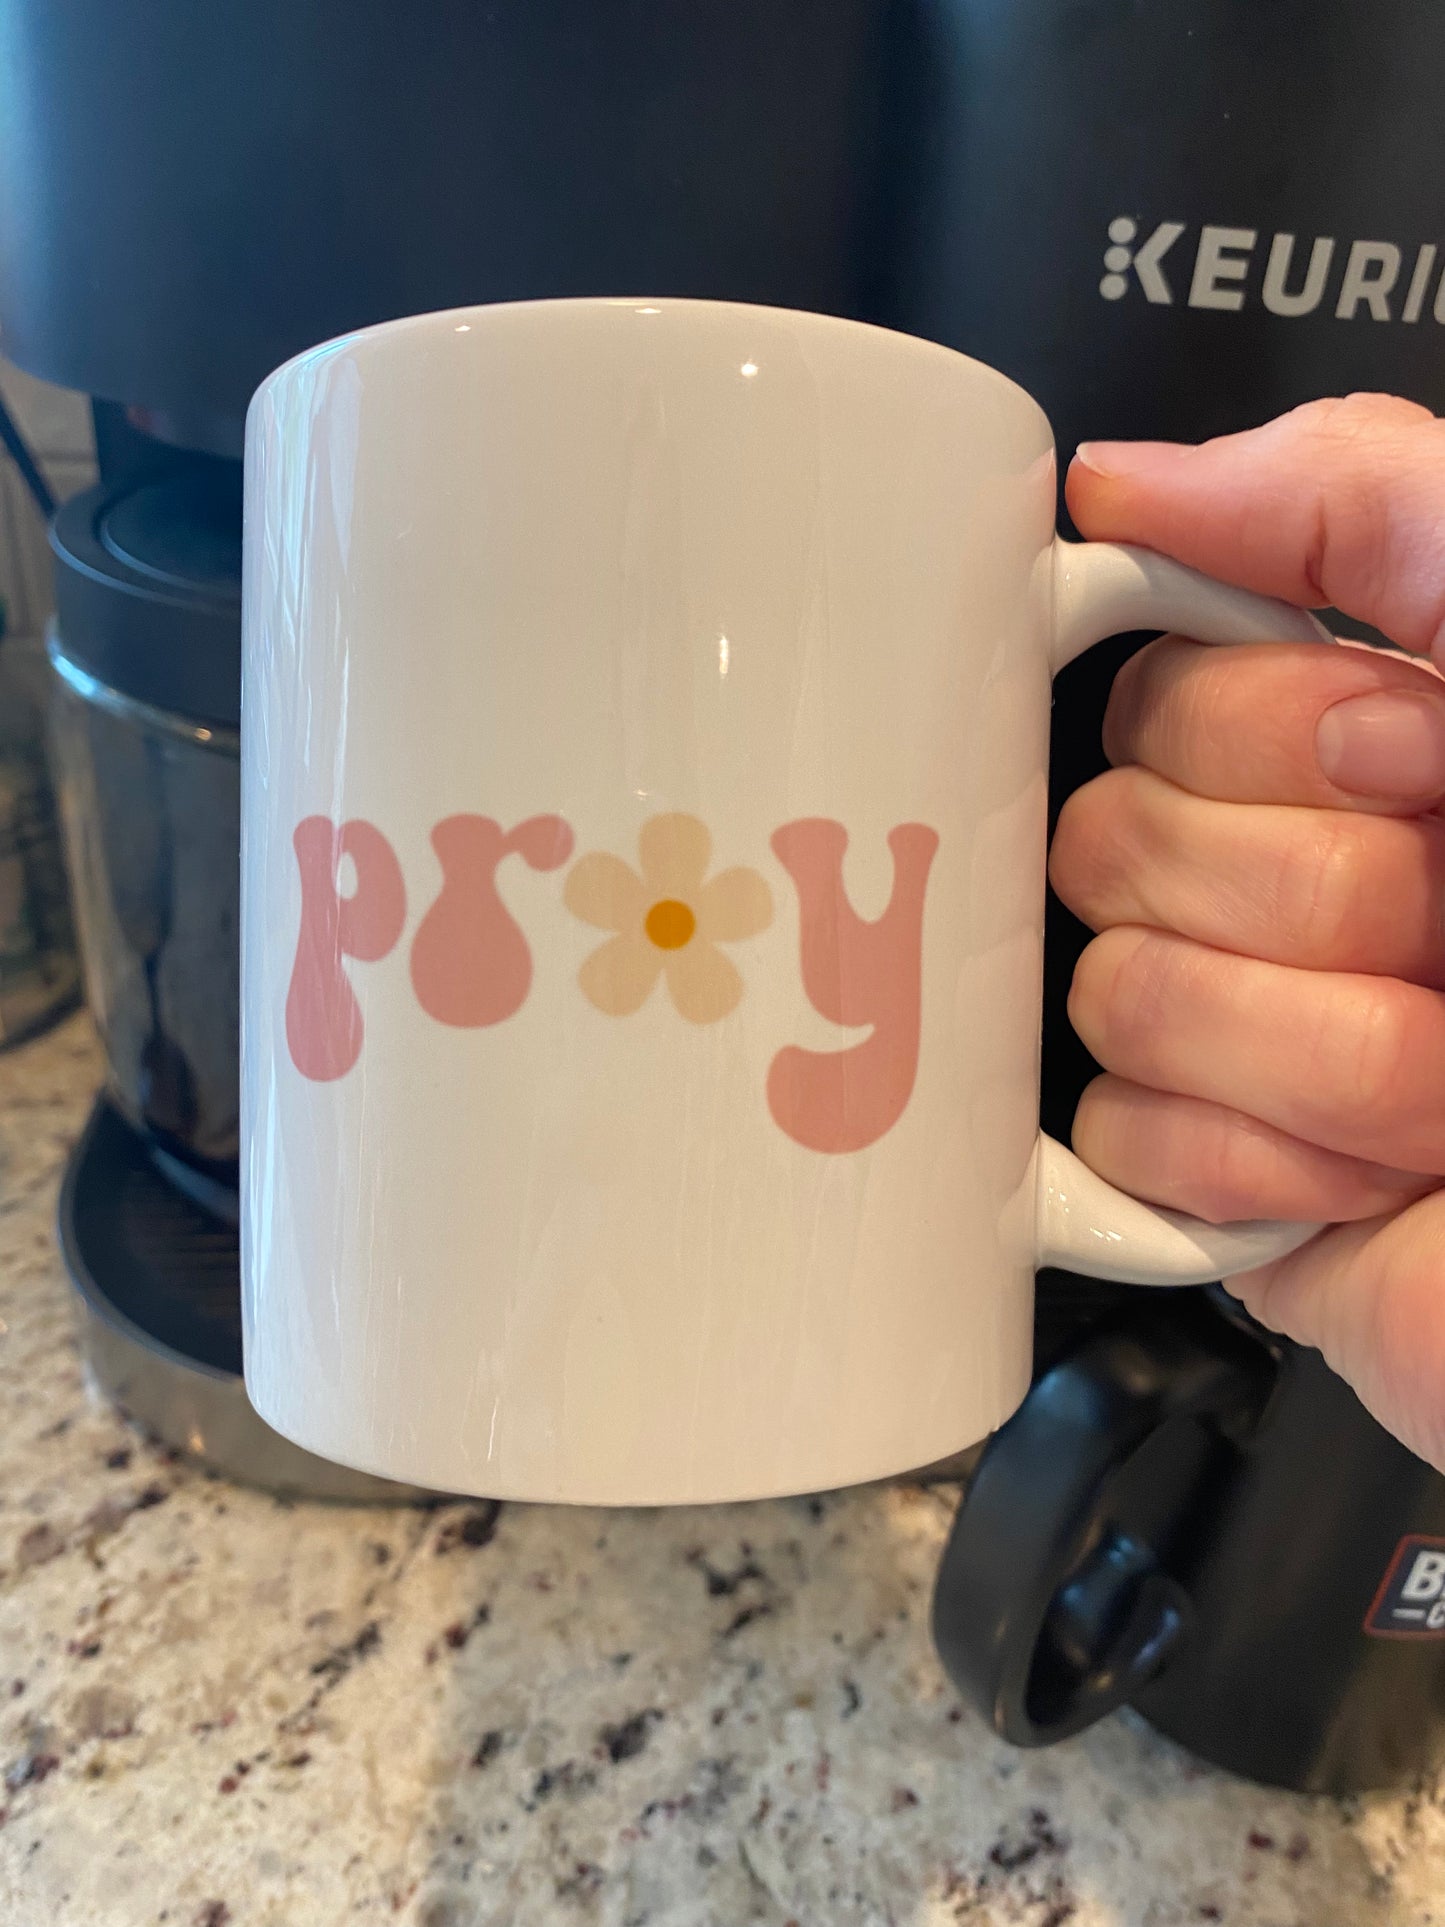 PRAY - mug